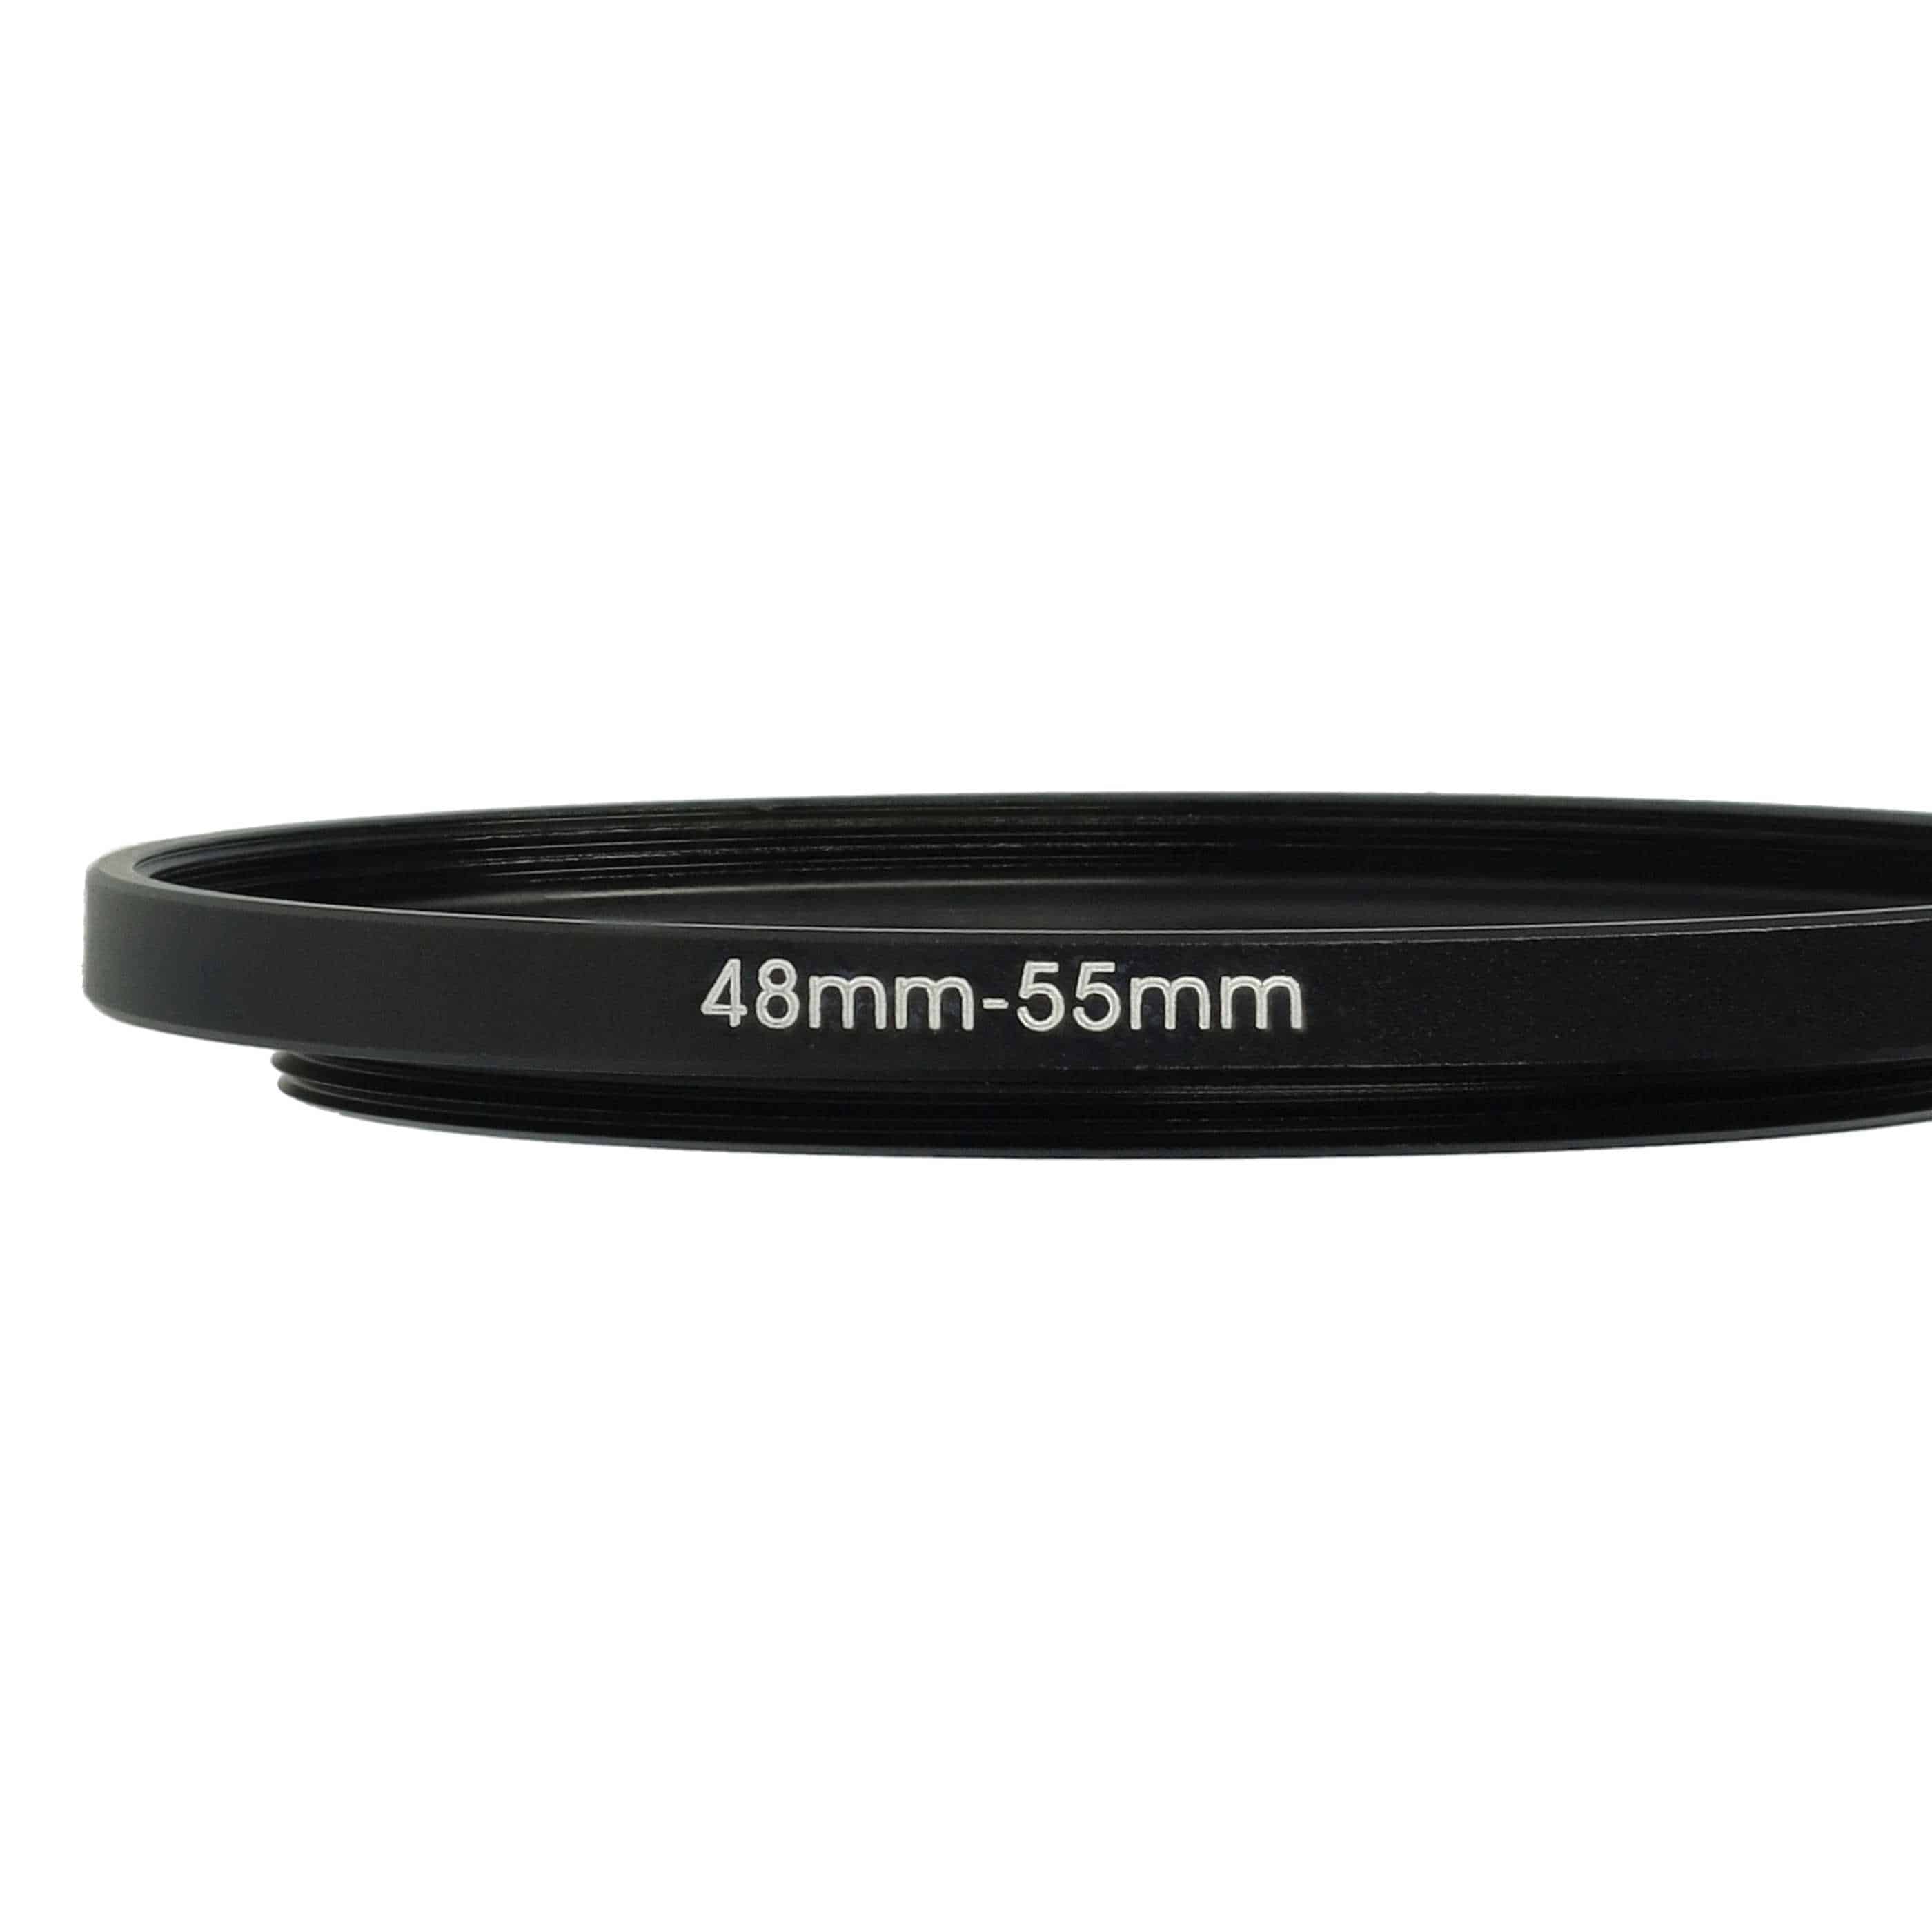 Bague Step-up 48 mm vers 55 mm pour divers objectifs d'appareil photo - Adaptateur filtre